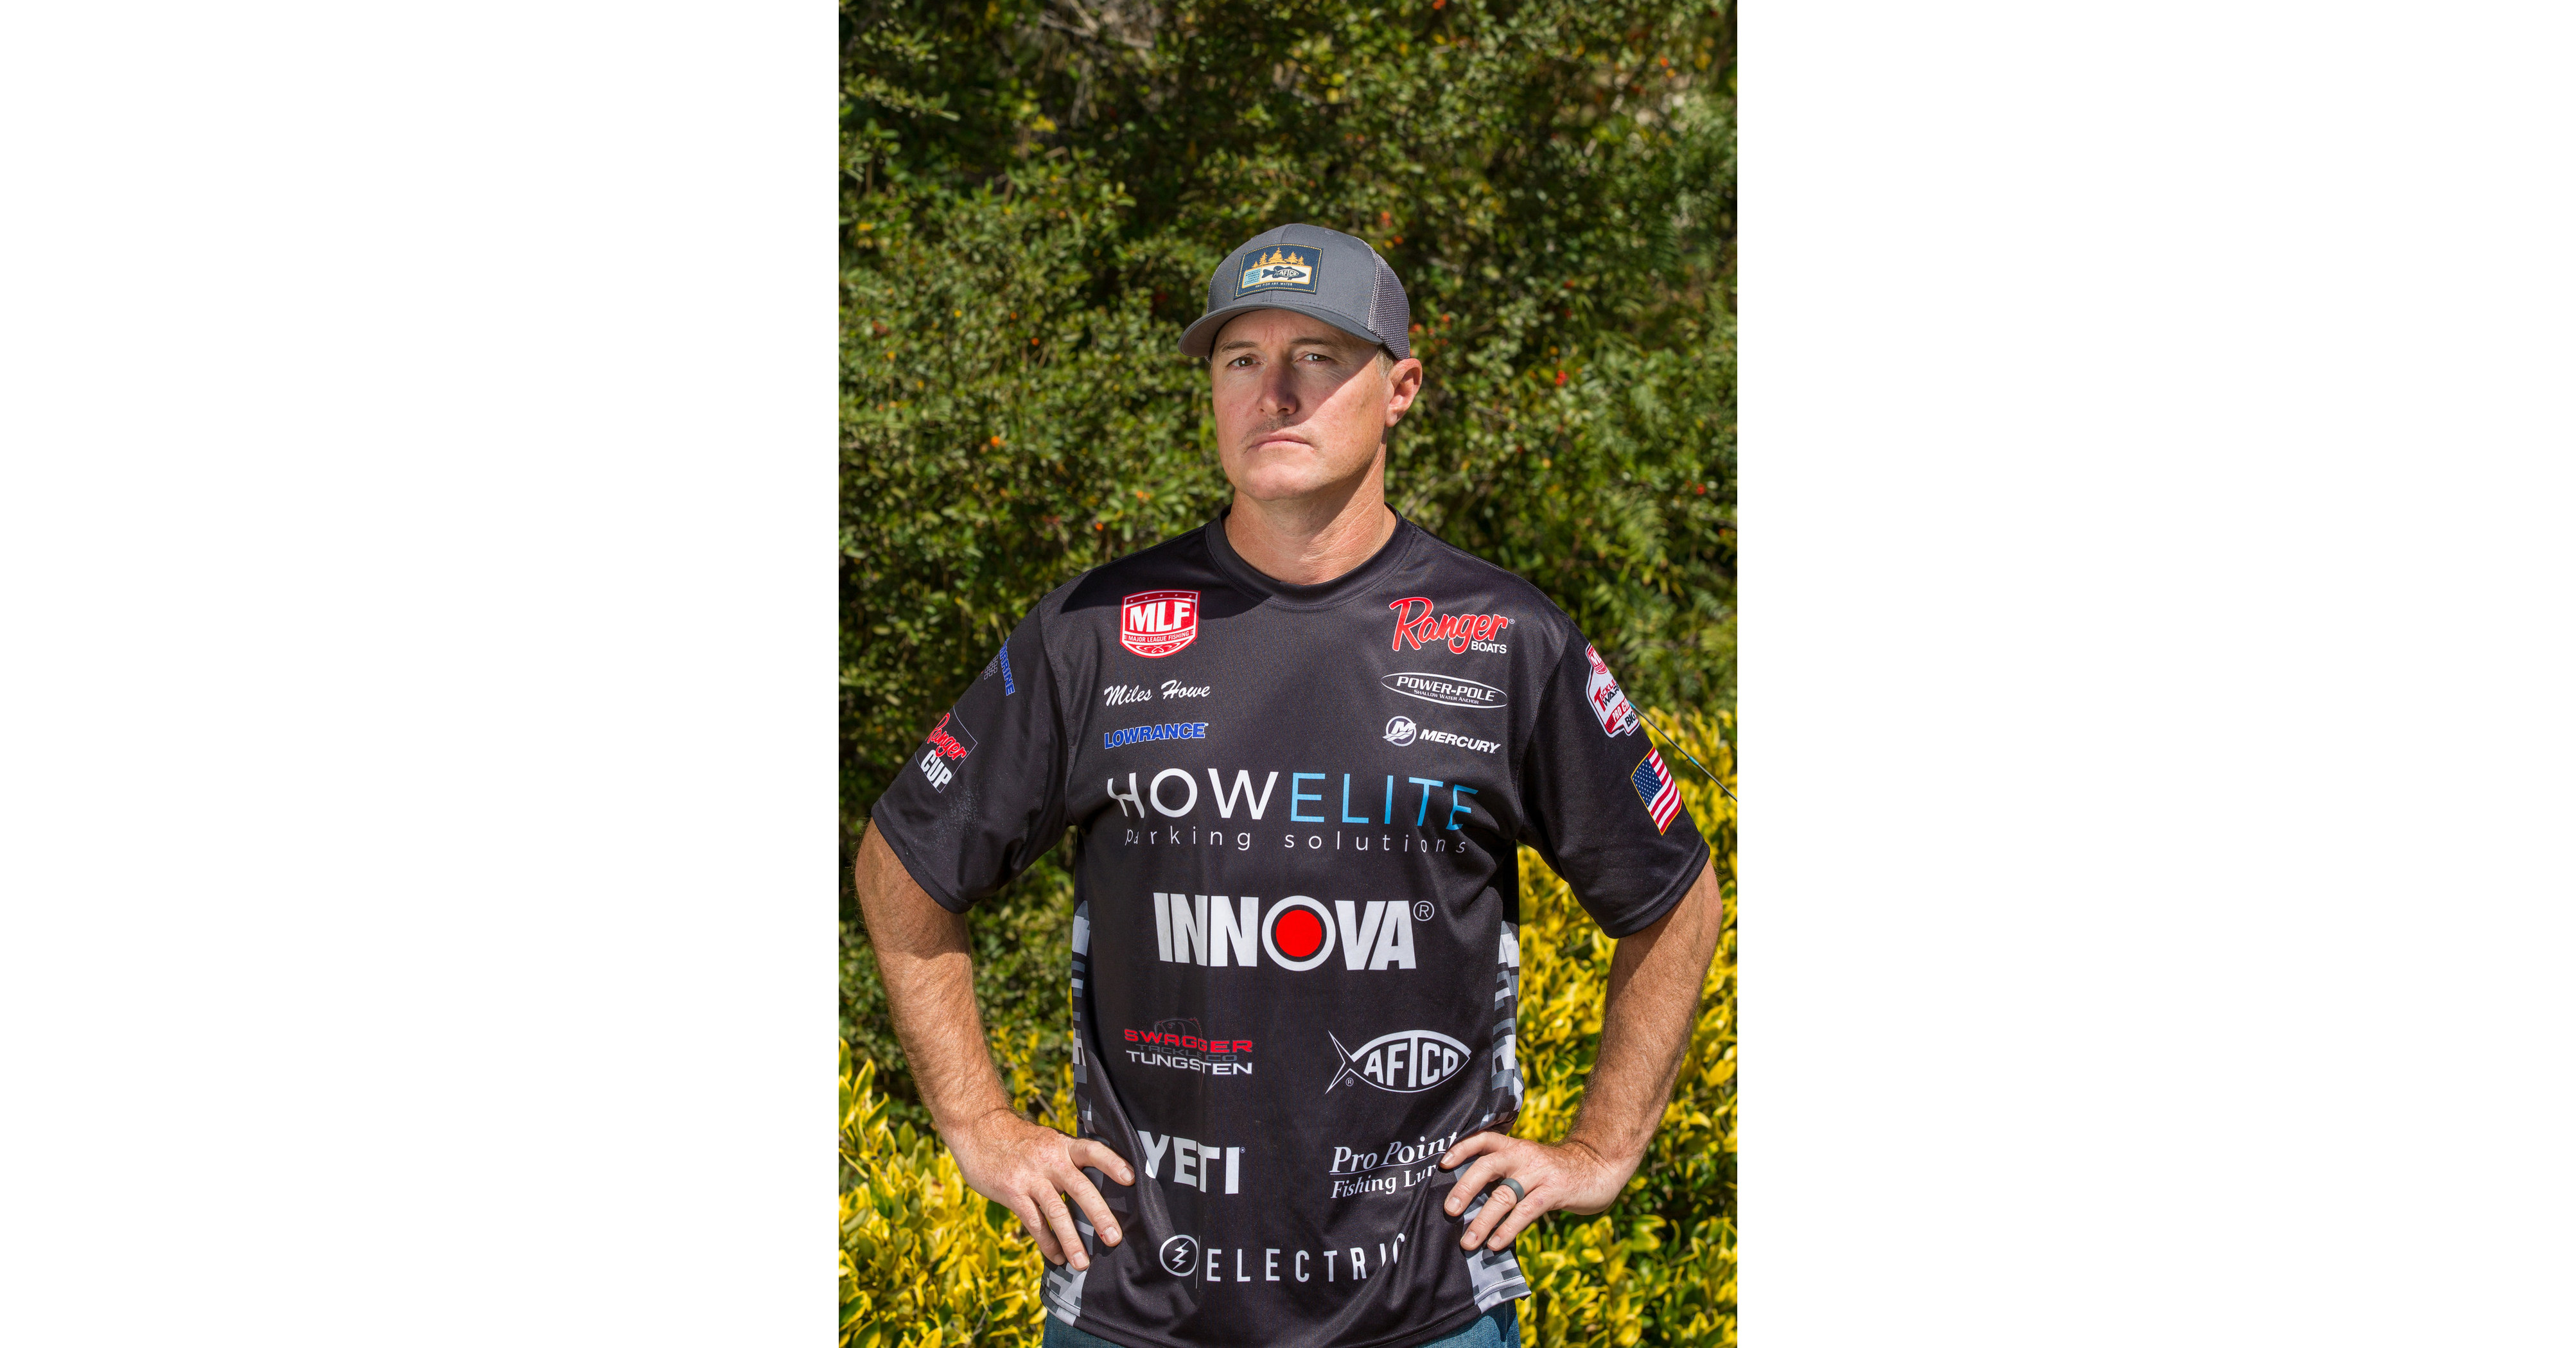 Innova Announces Sponsorship of MLF Bass Pro Tour Angler Miles Howe